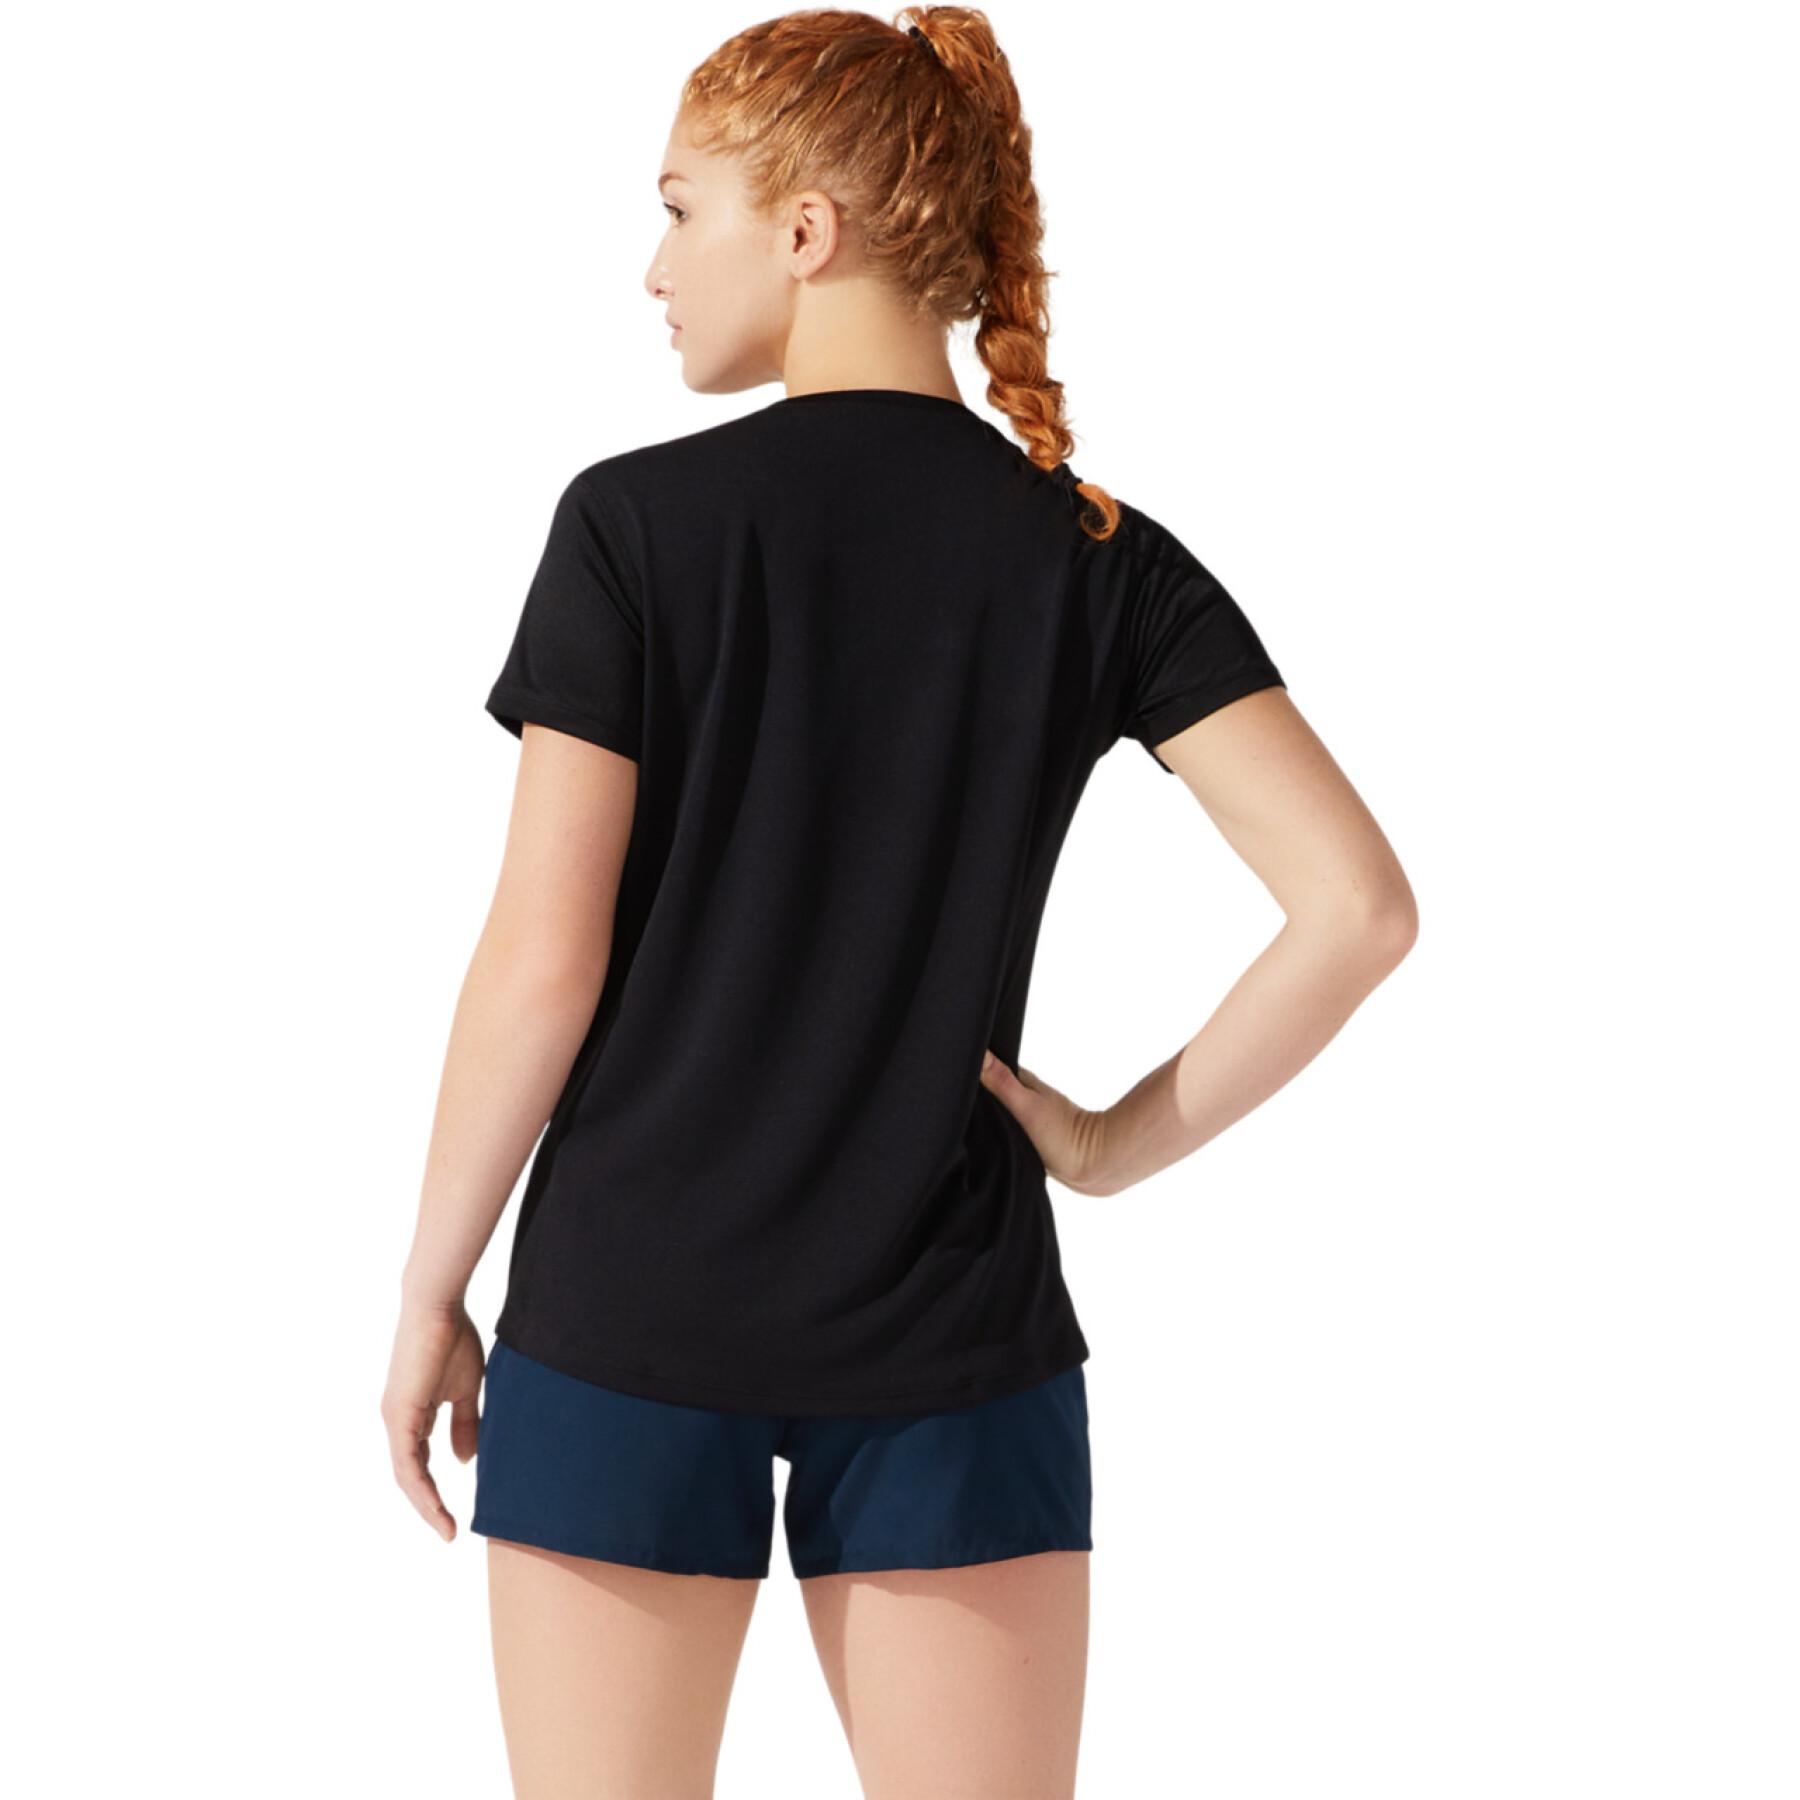 Damen-T-Shirt Asics Core